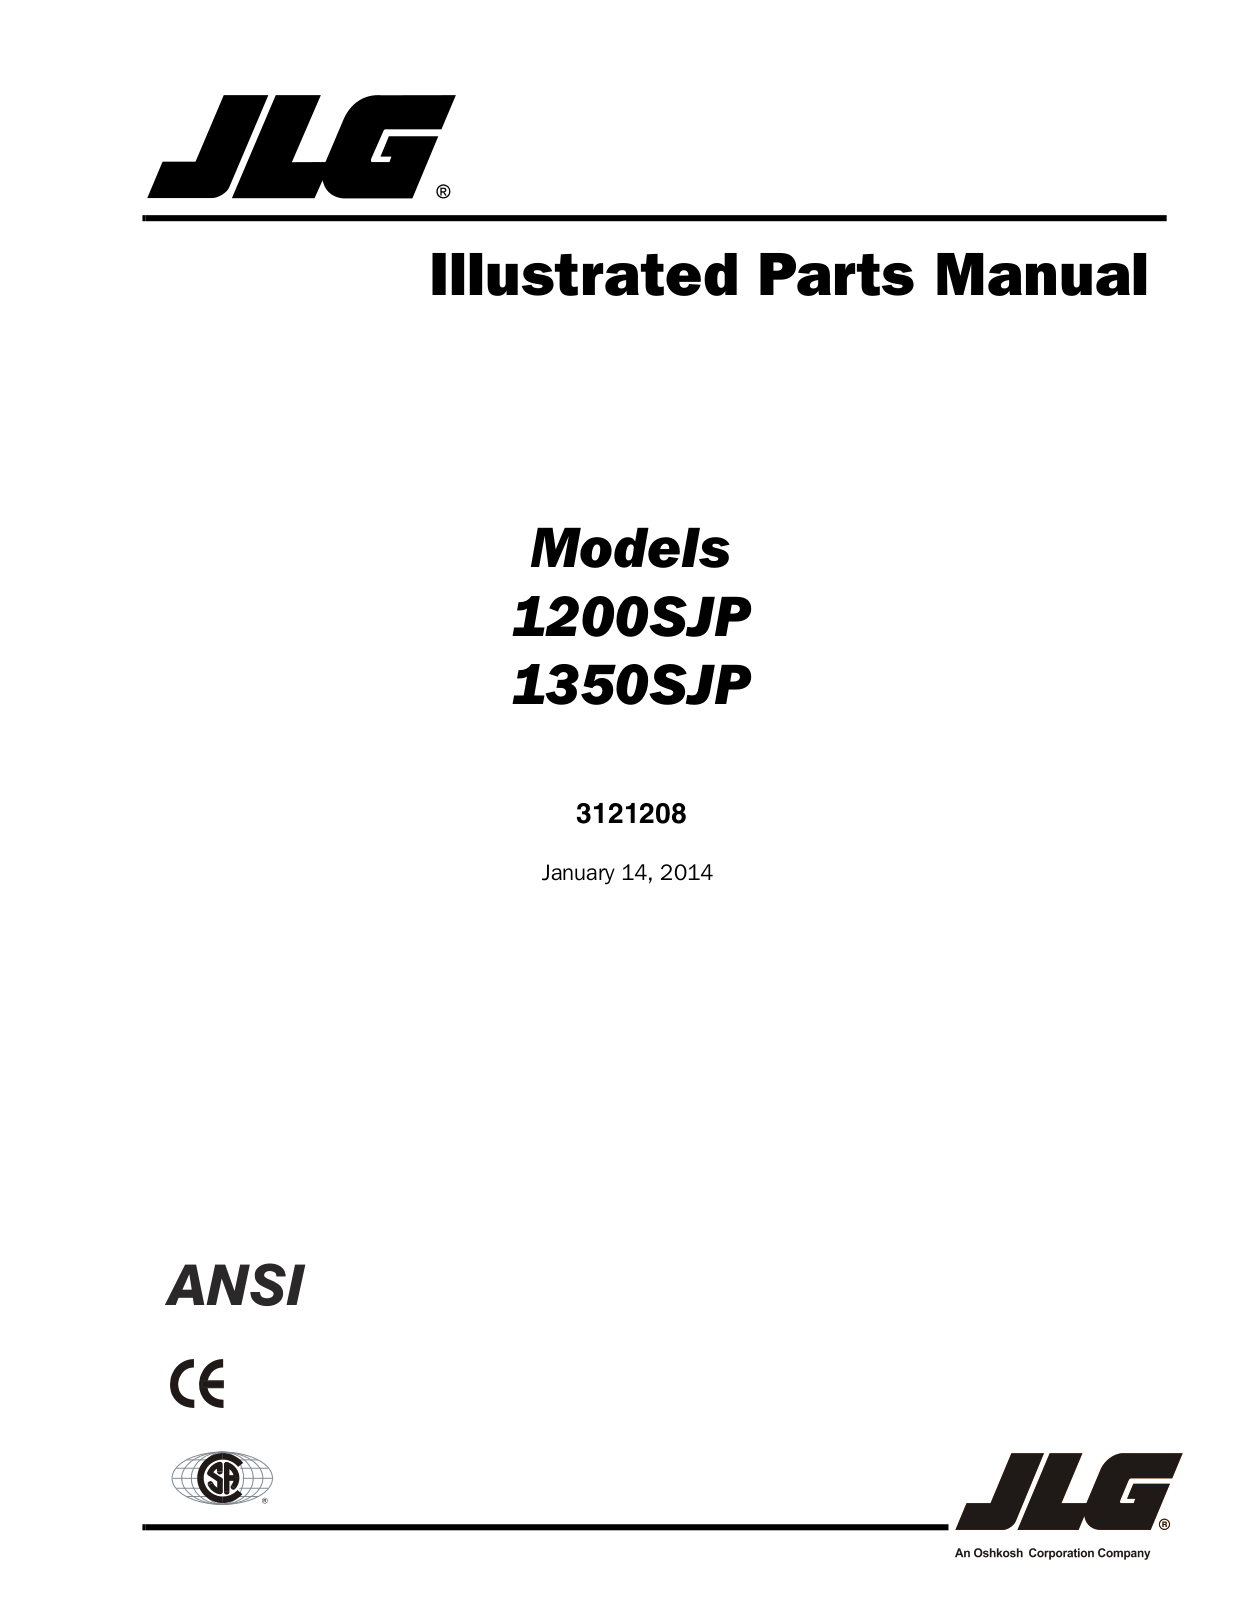 JLG 1350SJP Parts Manual